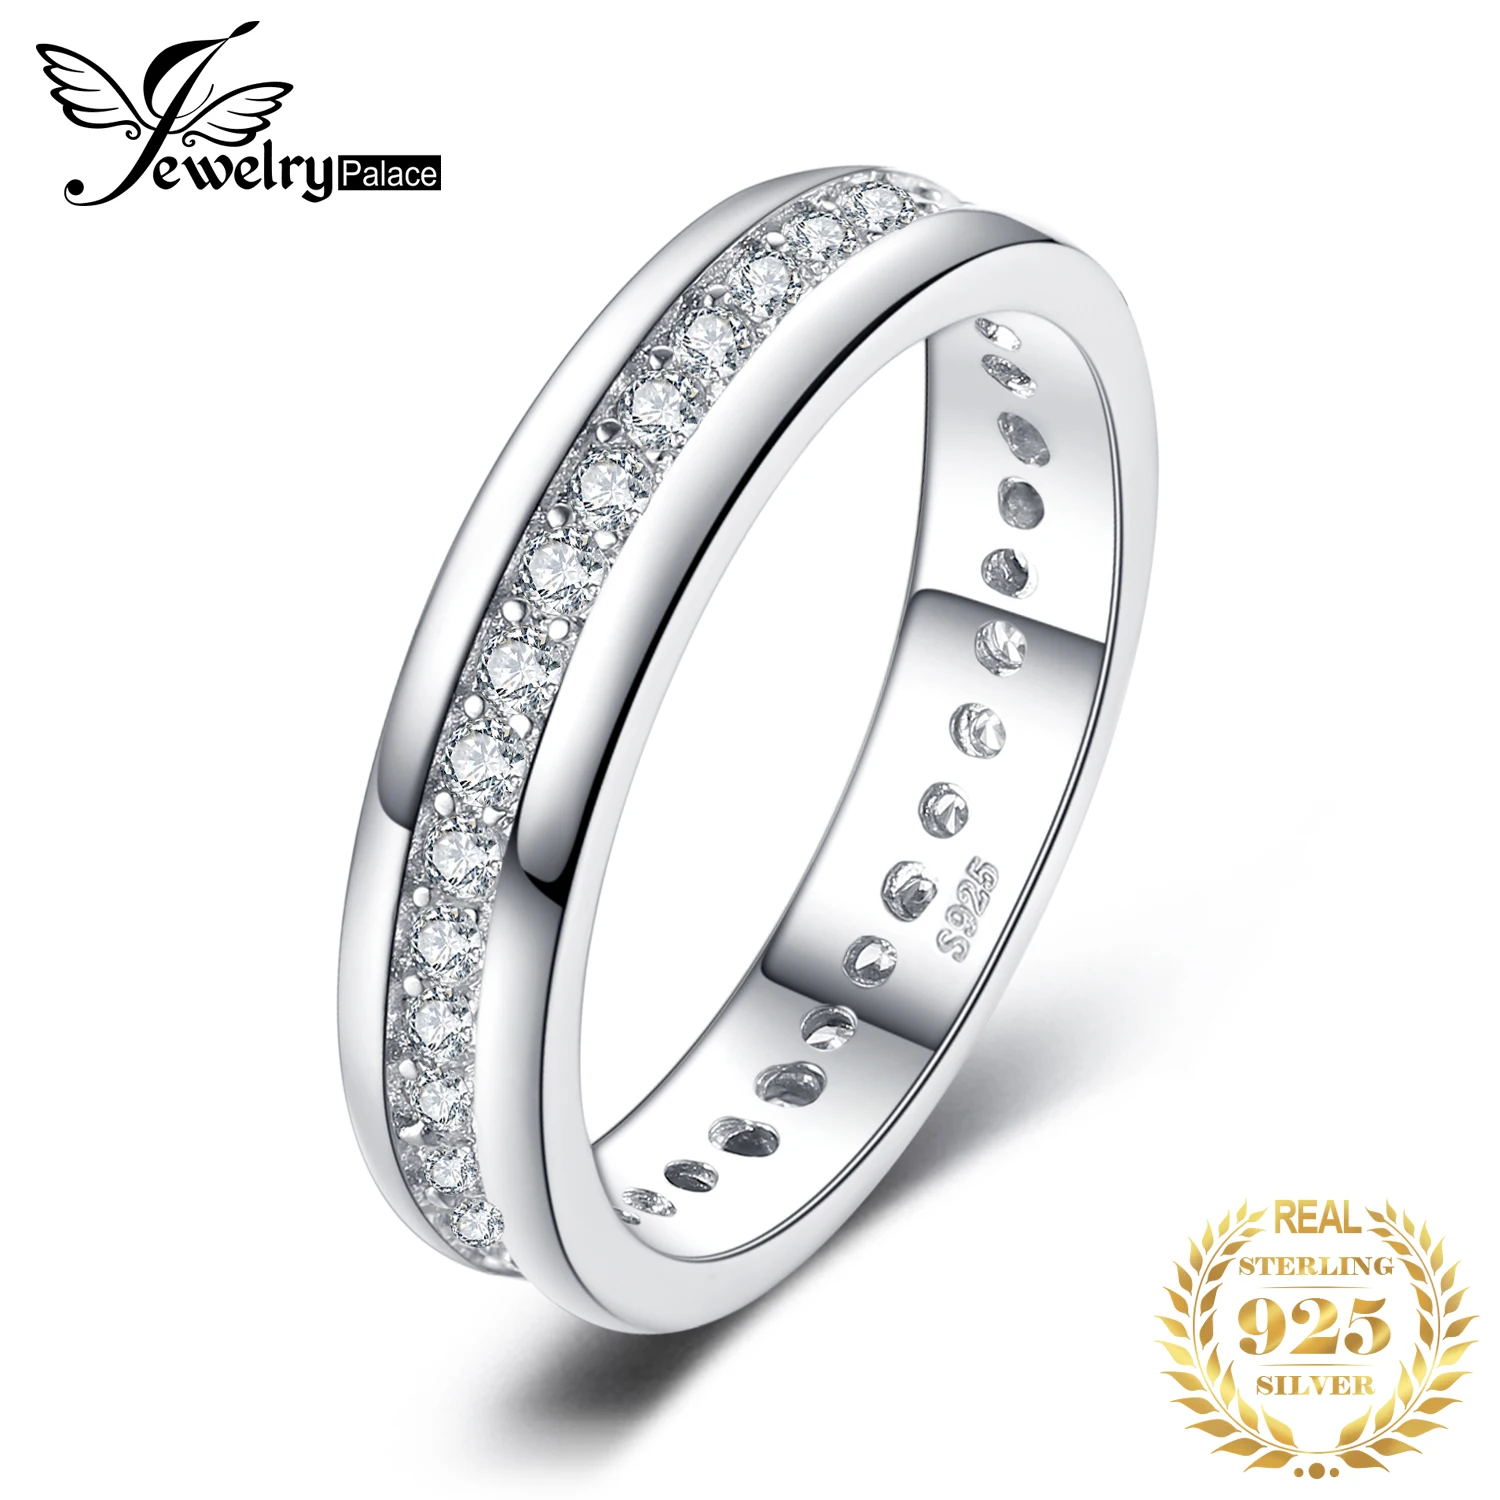 JewelryPalace-女性のためのスターリングシルバーの婚約指輪,リング,925スターリングシルバー,キュービックジルコニア,ジルコニア,光沢のあるダイヤモンドバンド,豪華なジュエリー